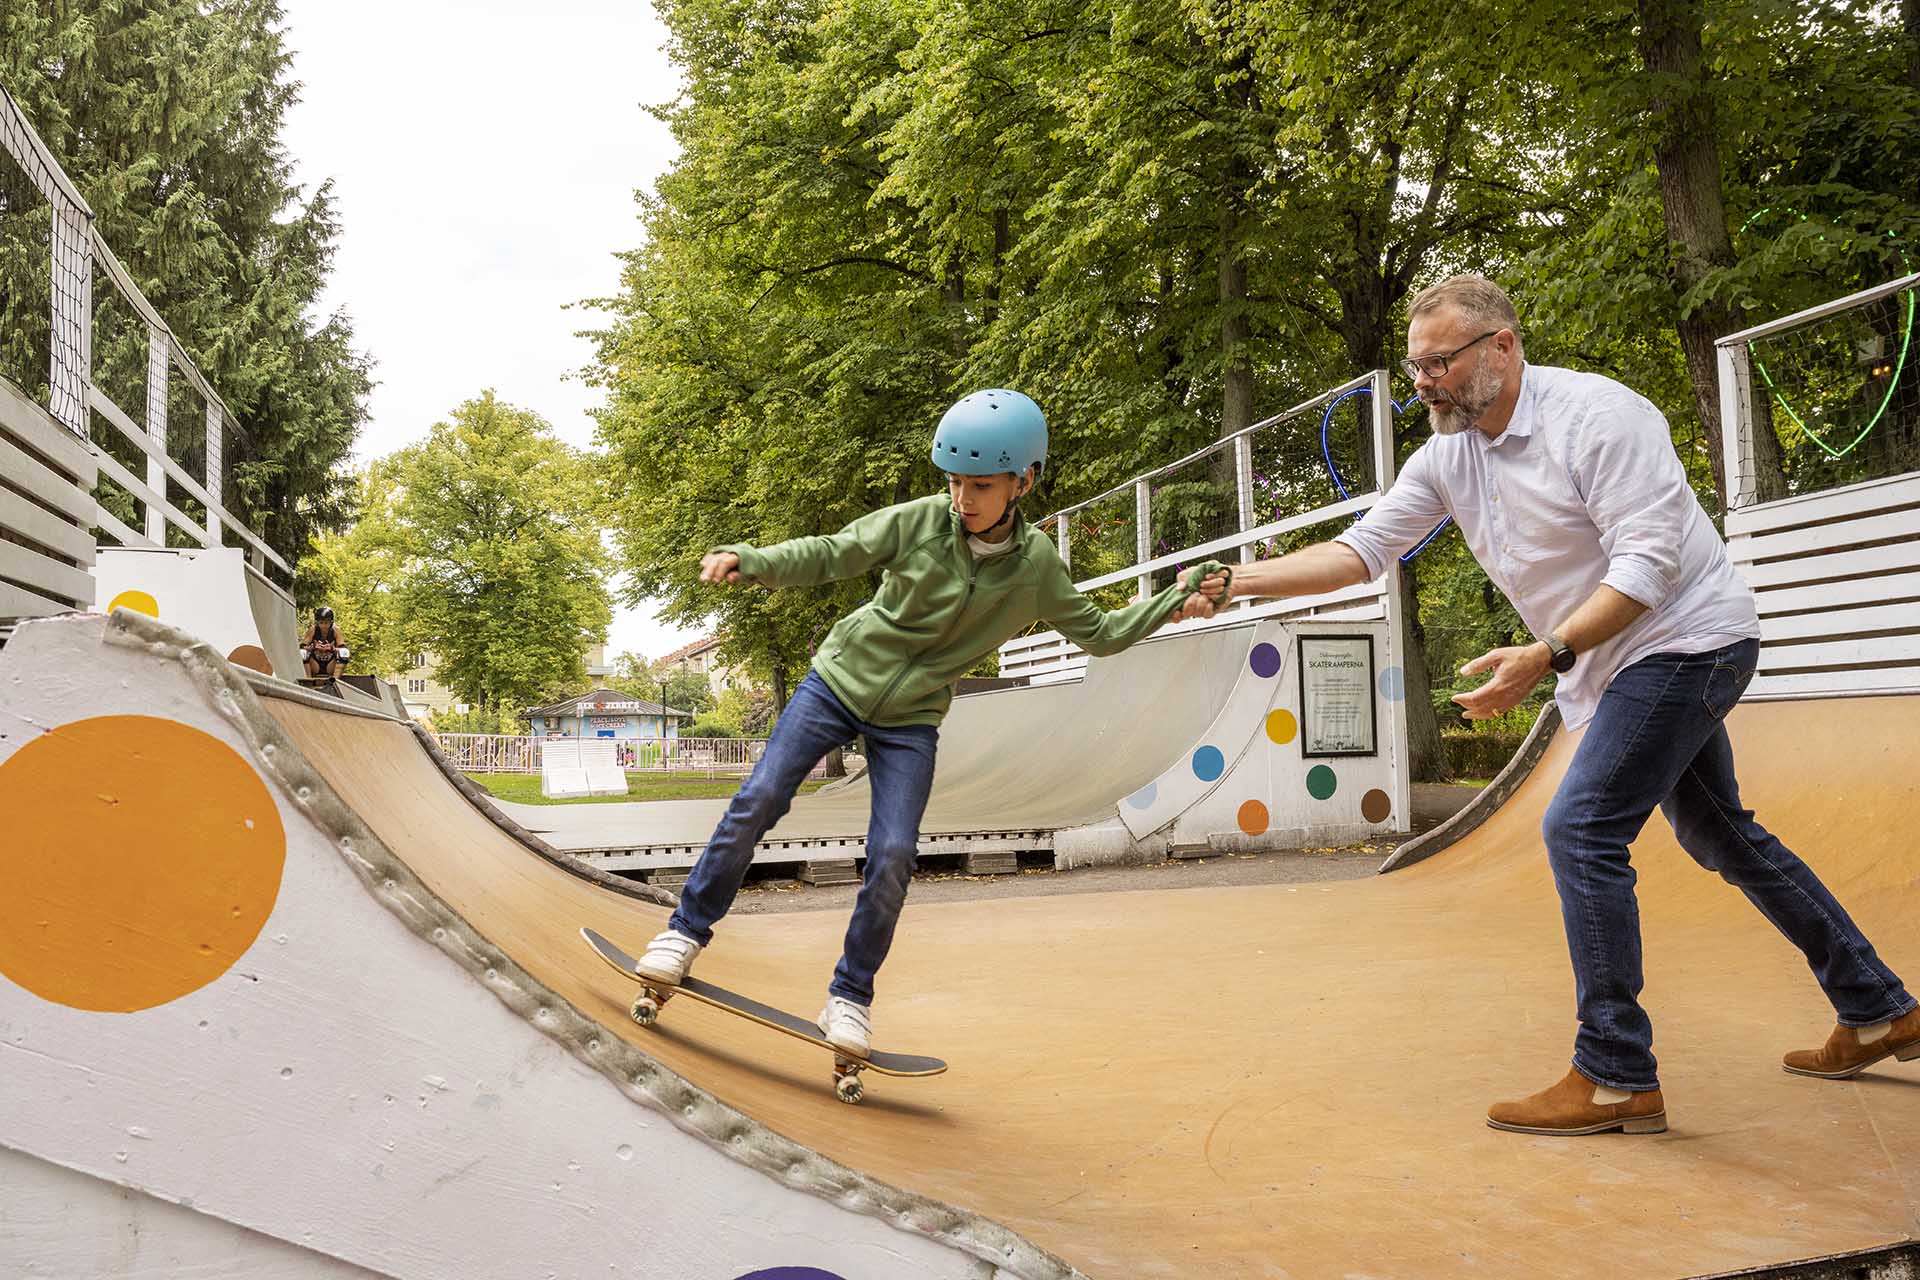 En man hjälper en pojke som åker skateboard i en utomhusramp